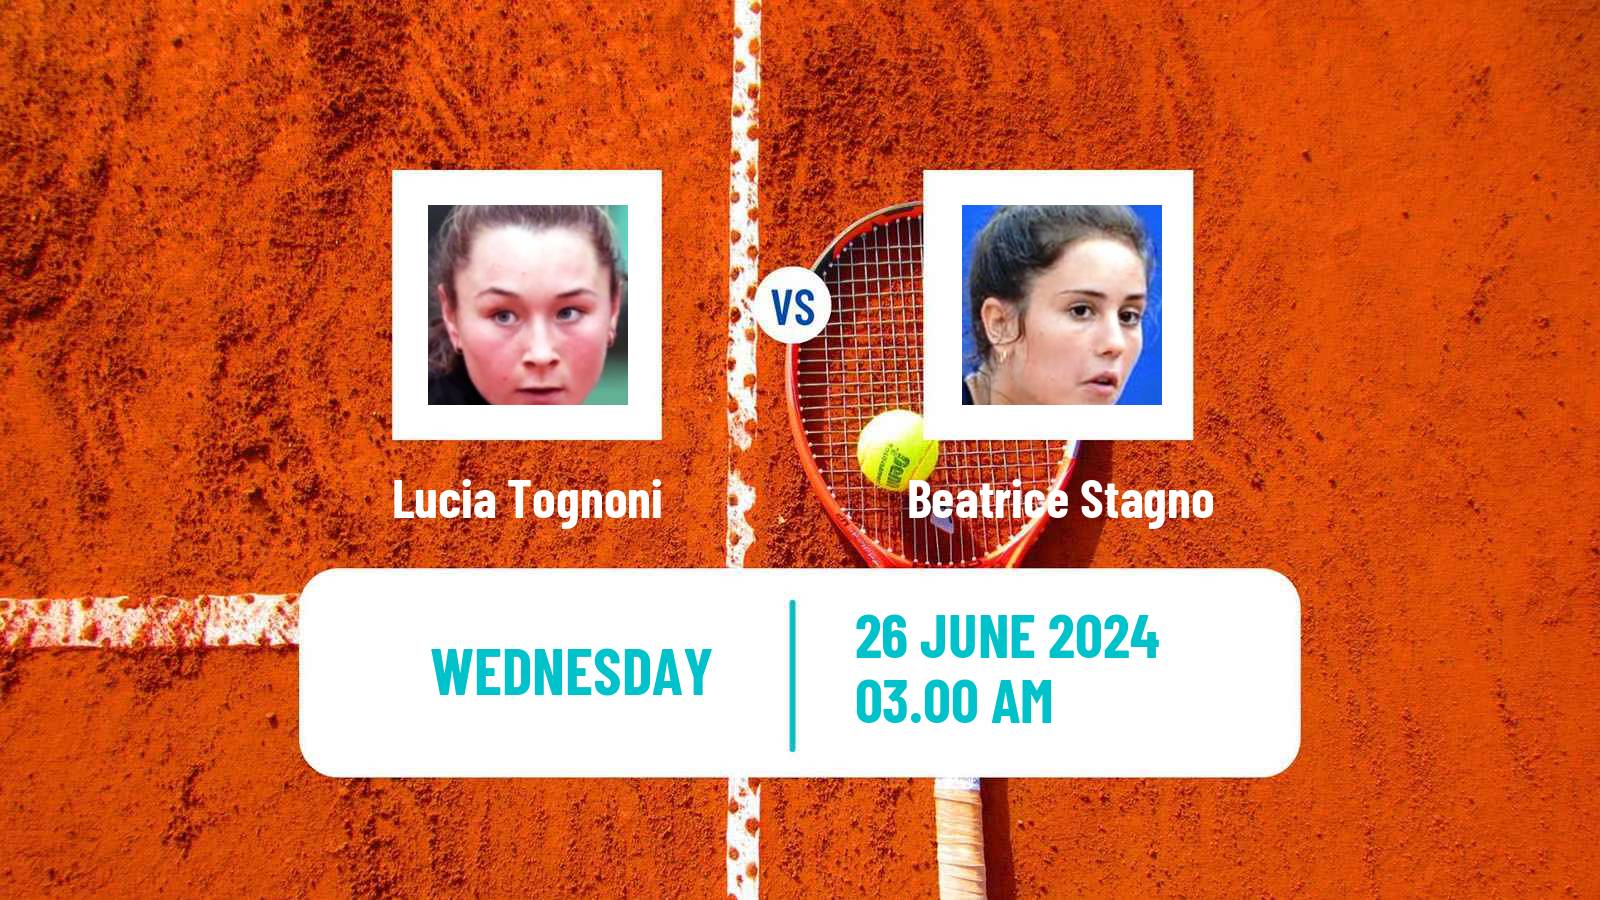 Tennis ITF W15 Hillcrest 2 Women Lucia Tognoni - Beatrice Stagno